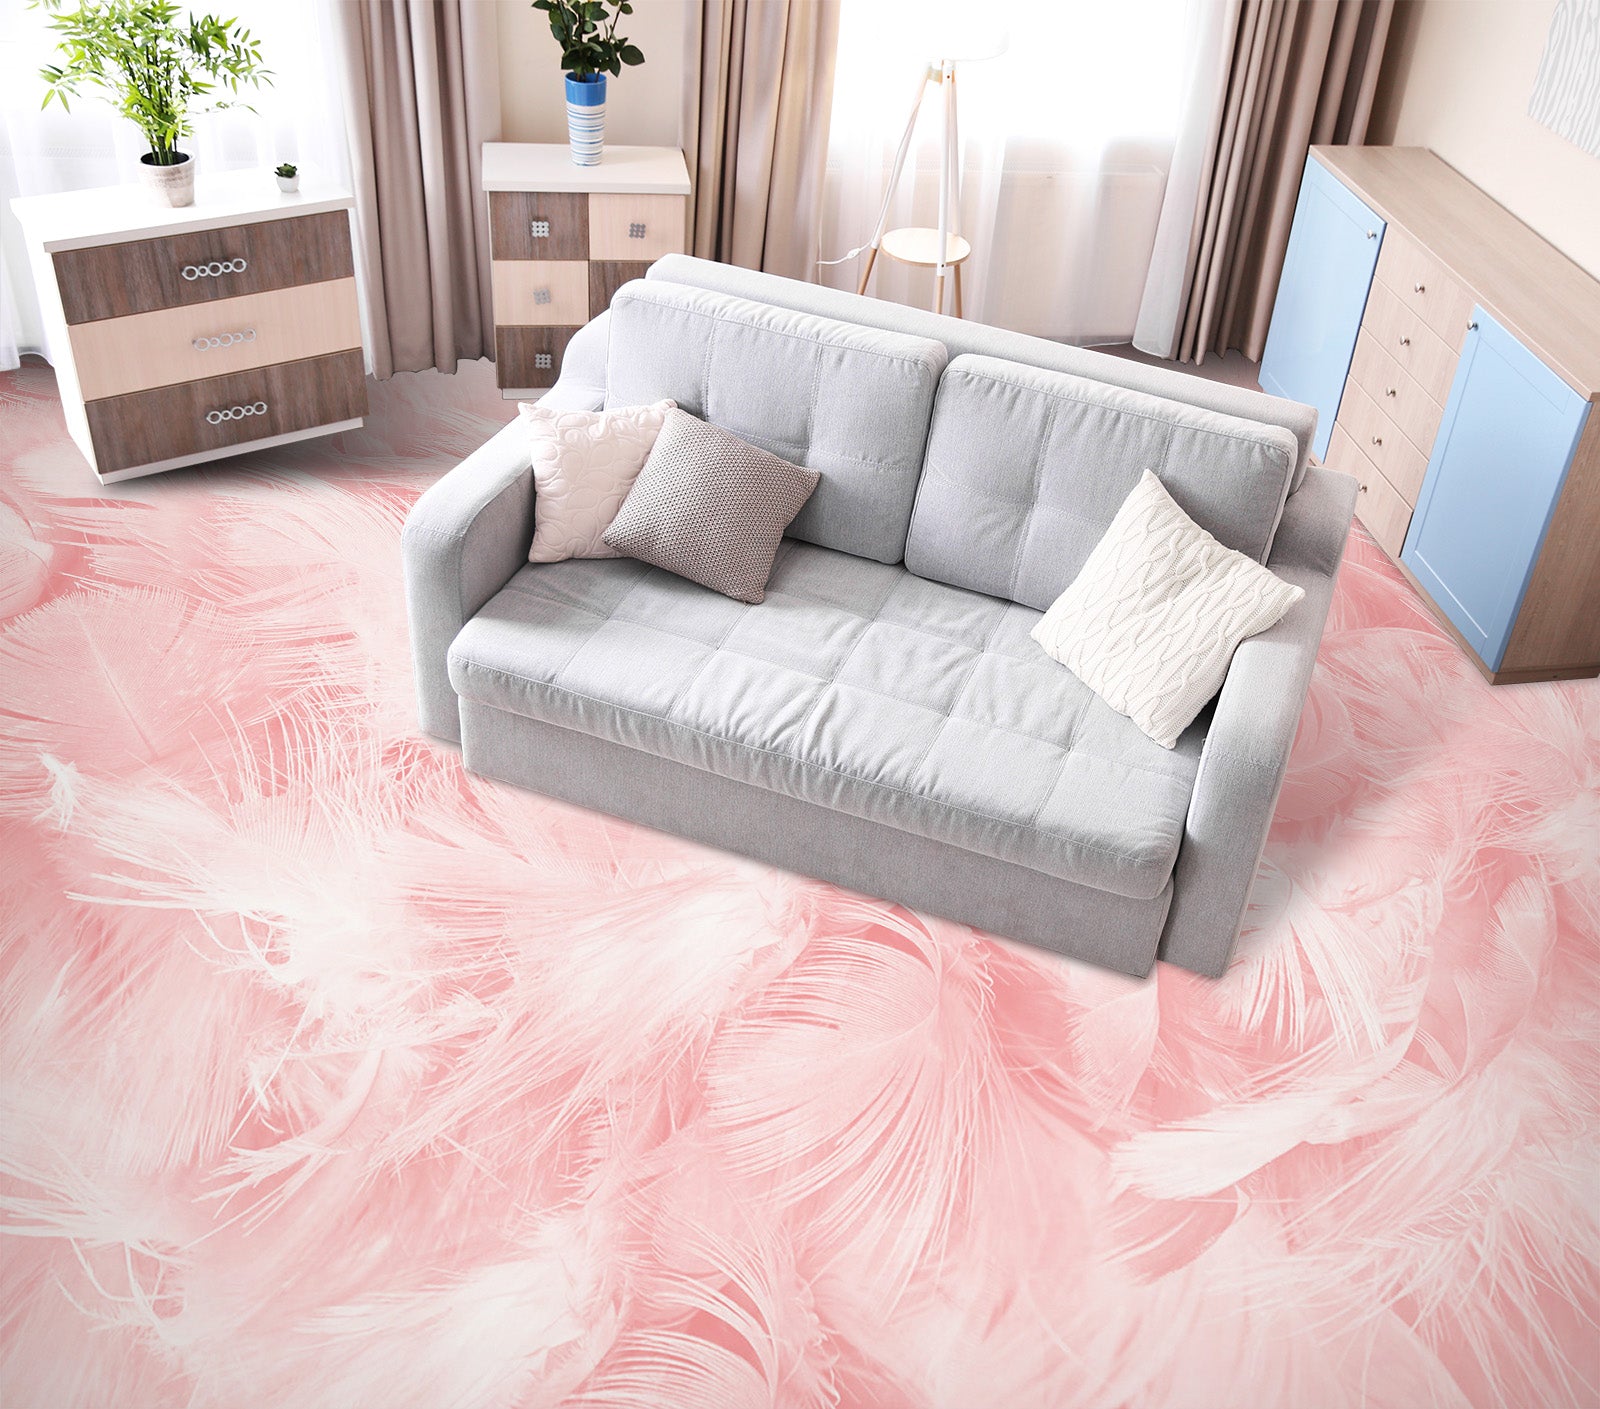 3D Pale Pink Feathers 562 Floor Mural  Wallpaper Murals Rug & Mat Print Epoxy waterproof bath floor